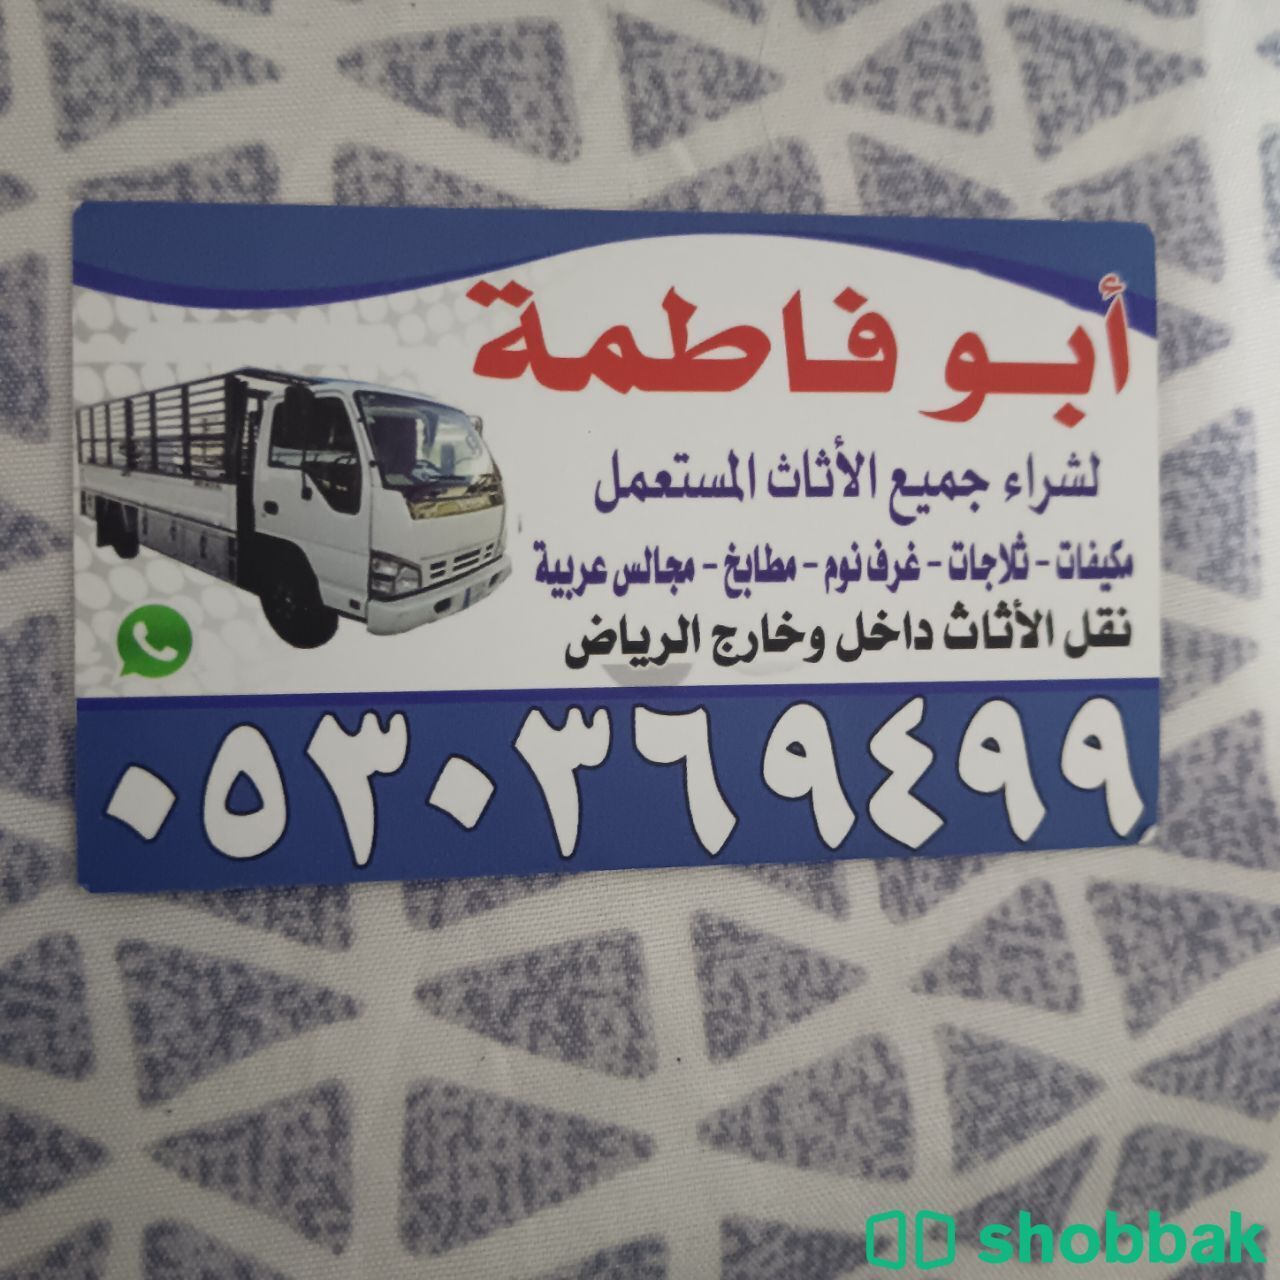 شراء مكيفات مستعمله حي الشفاء 0530369499  Shobbak Saudi Arabia